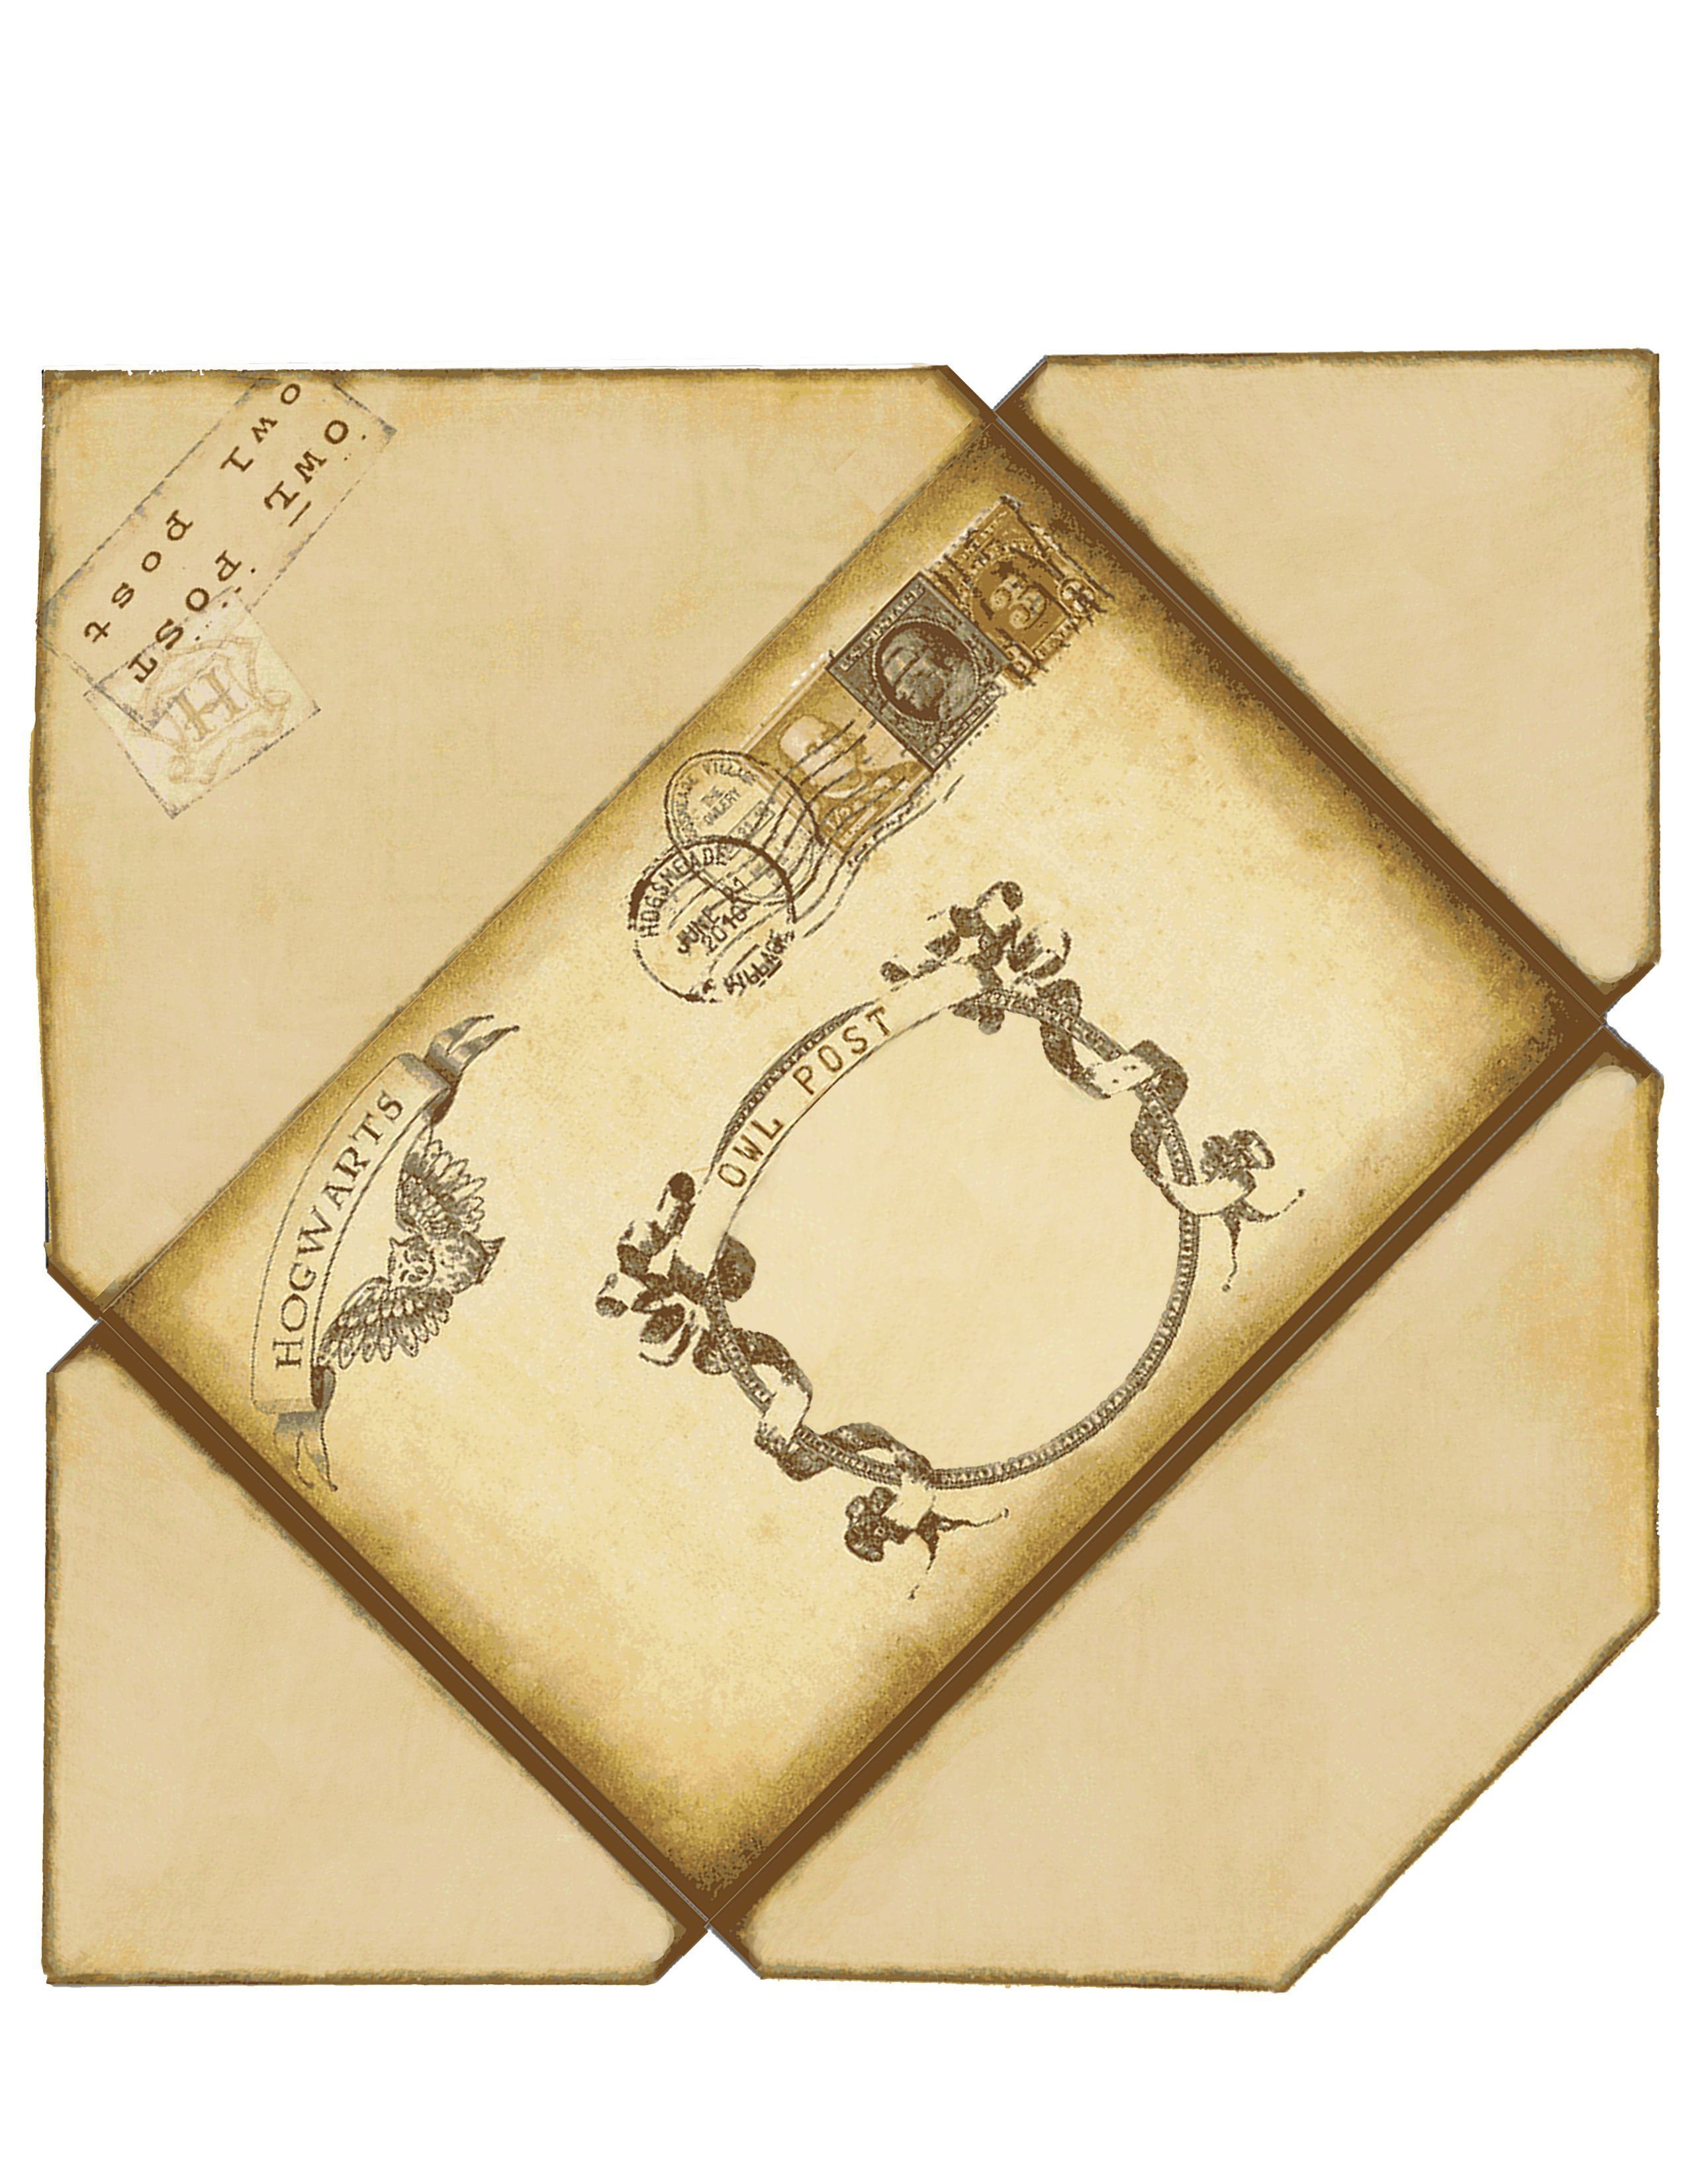 Harry Potter Hogwarts Envelope Wallpapers On Wallpaperdog